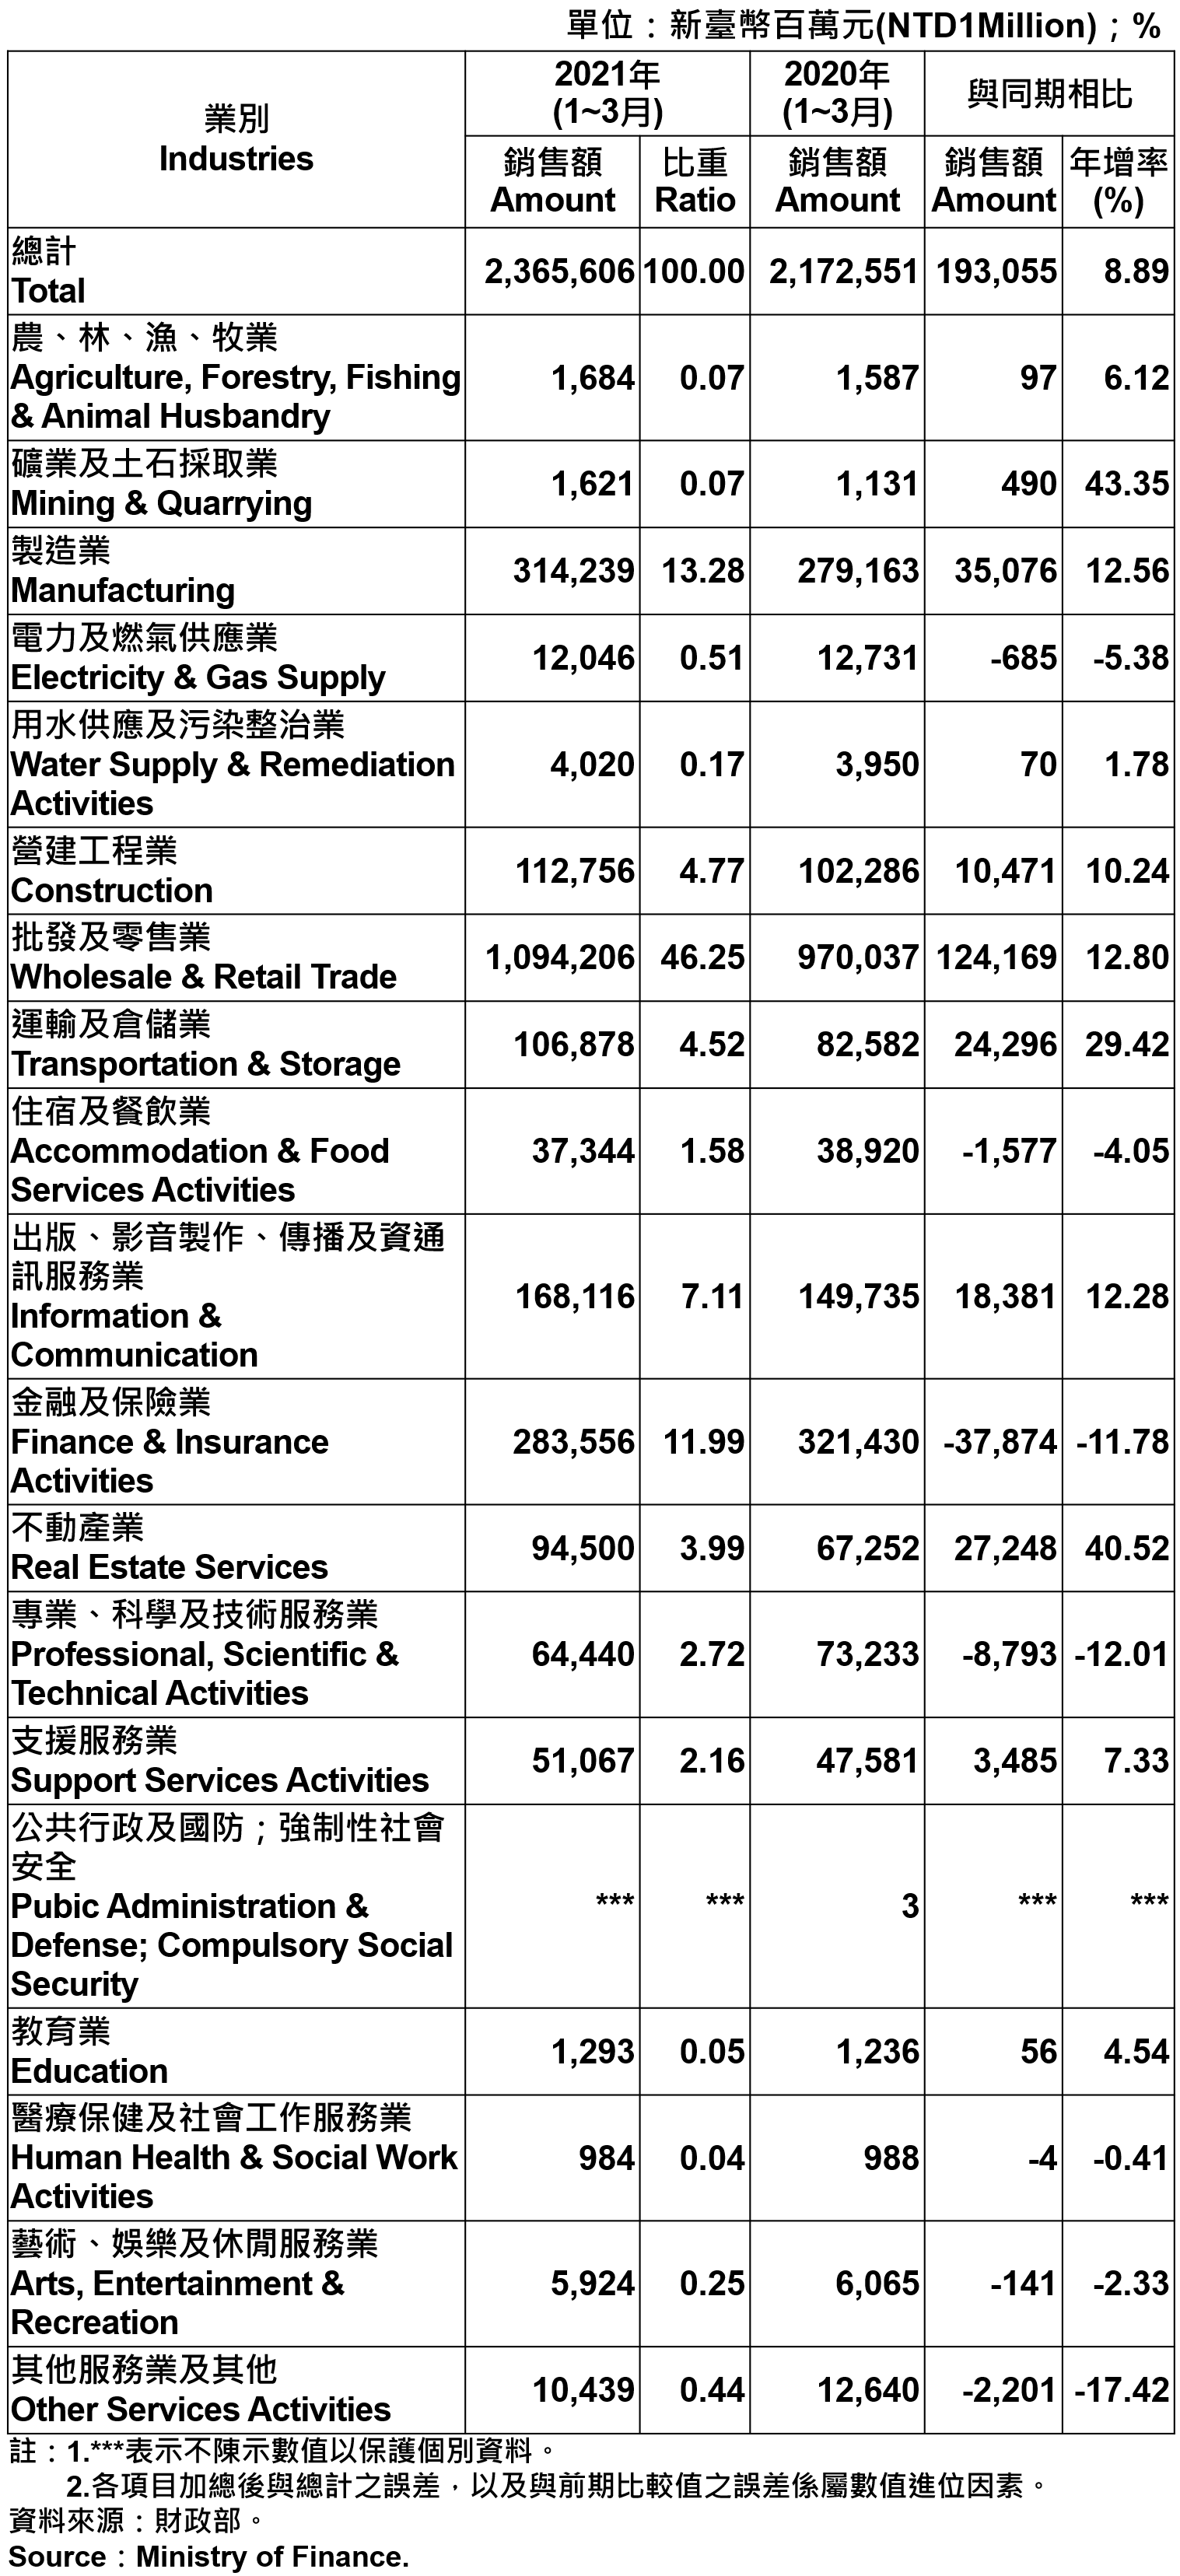 臺北市各產業公司行號銷售額—2021Q1 Operating Income for Business Enterprises in Taipei City—2021Q1